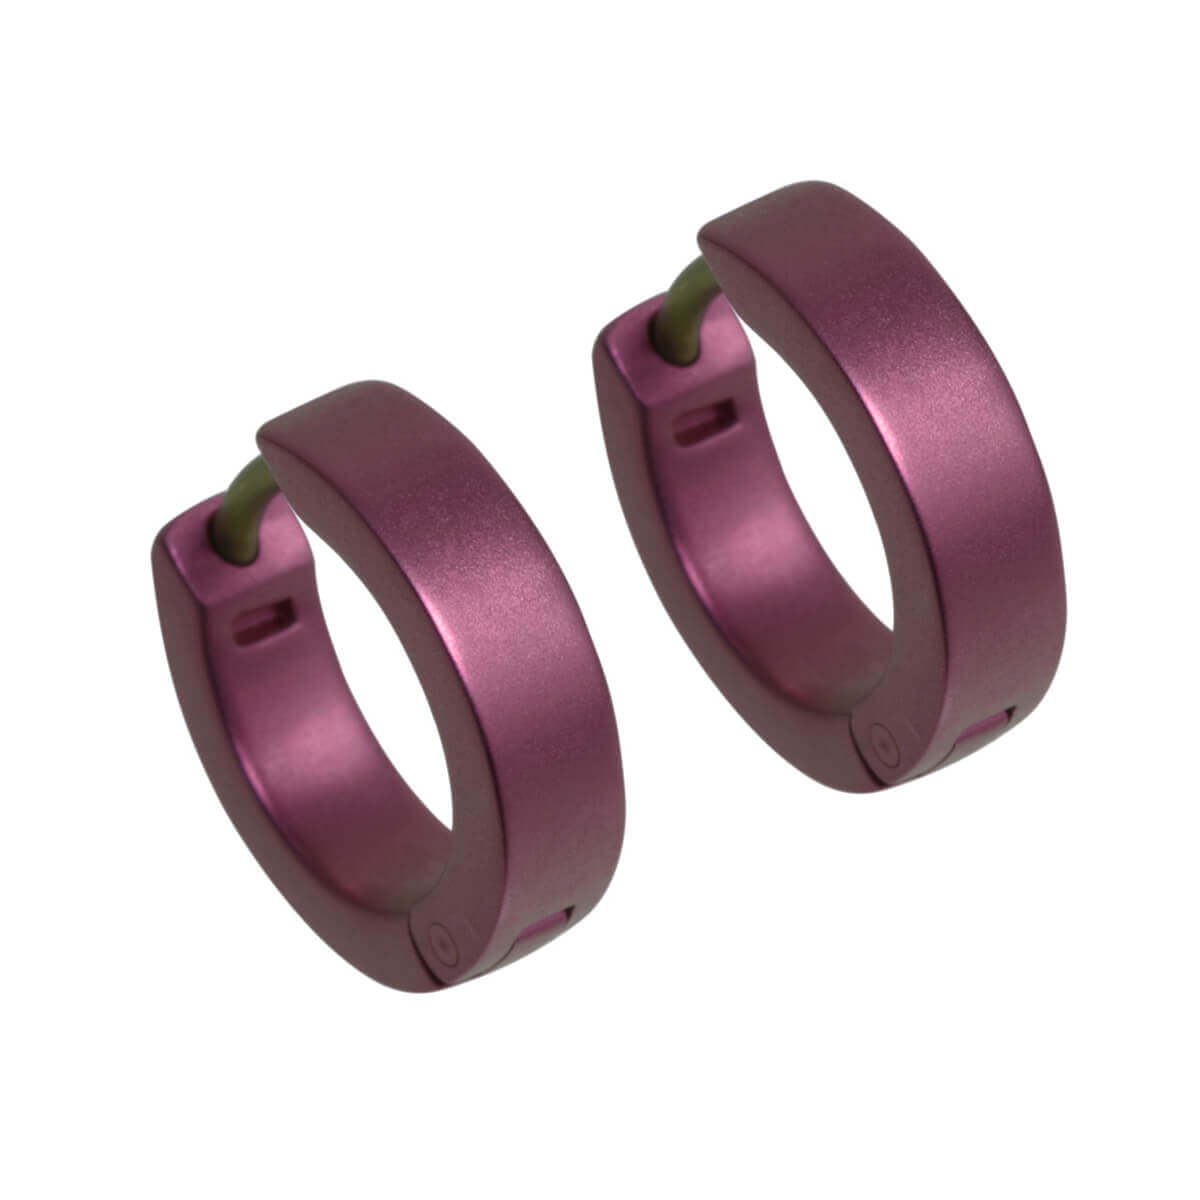 Titanium Small Hinged Hoop Earrings - Pink/Purple Tones